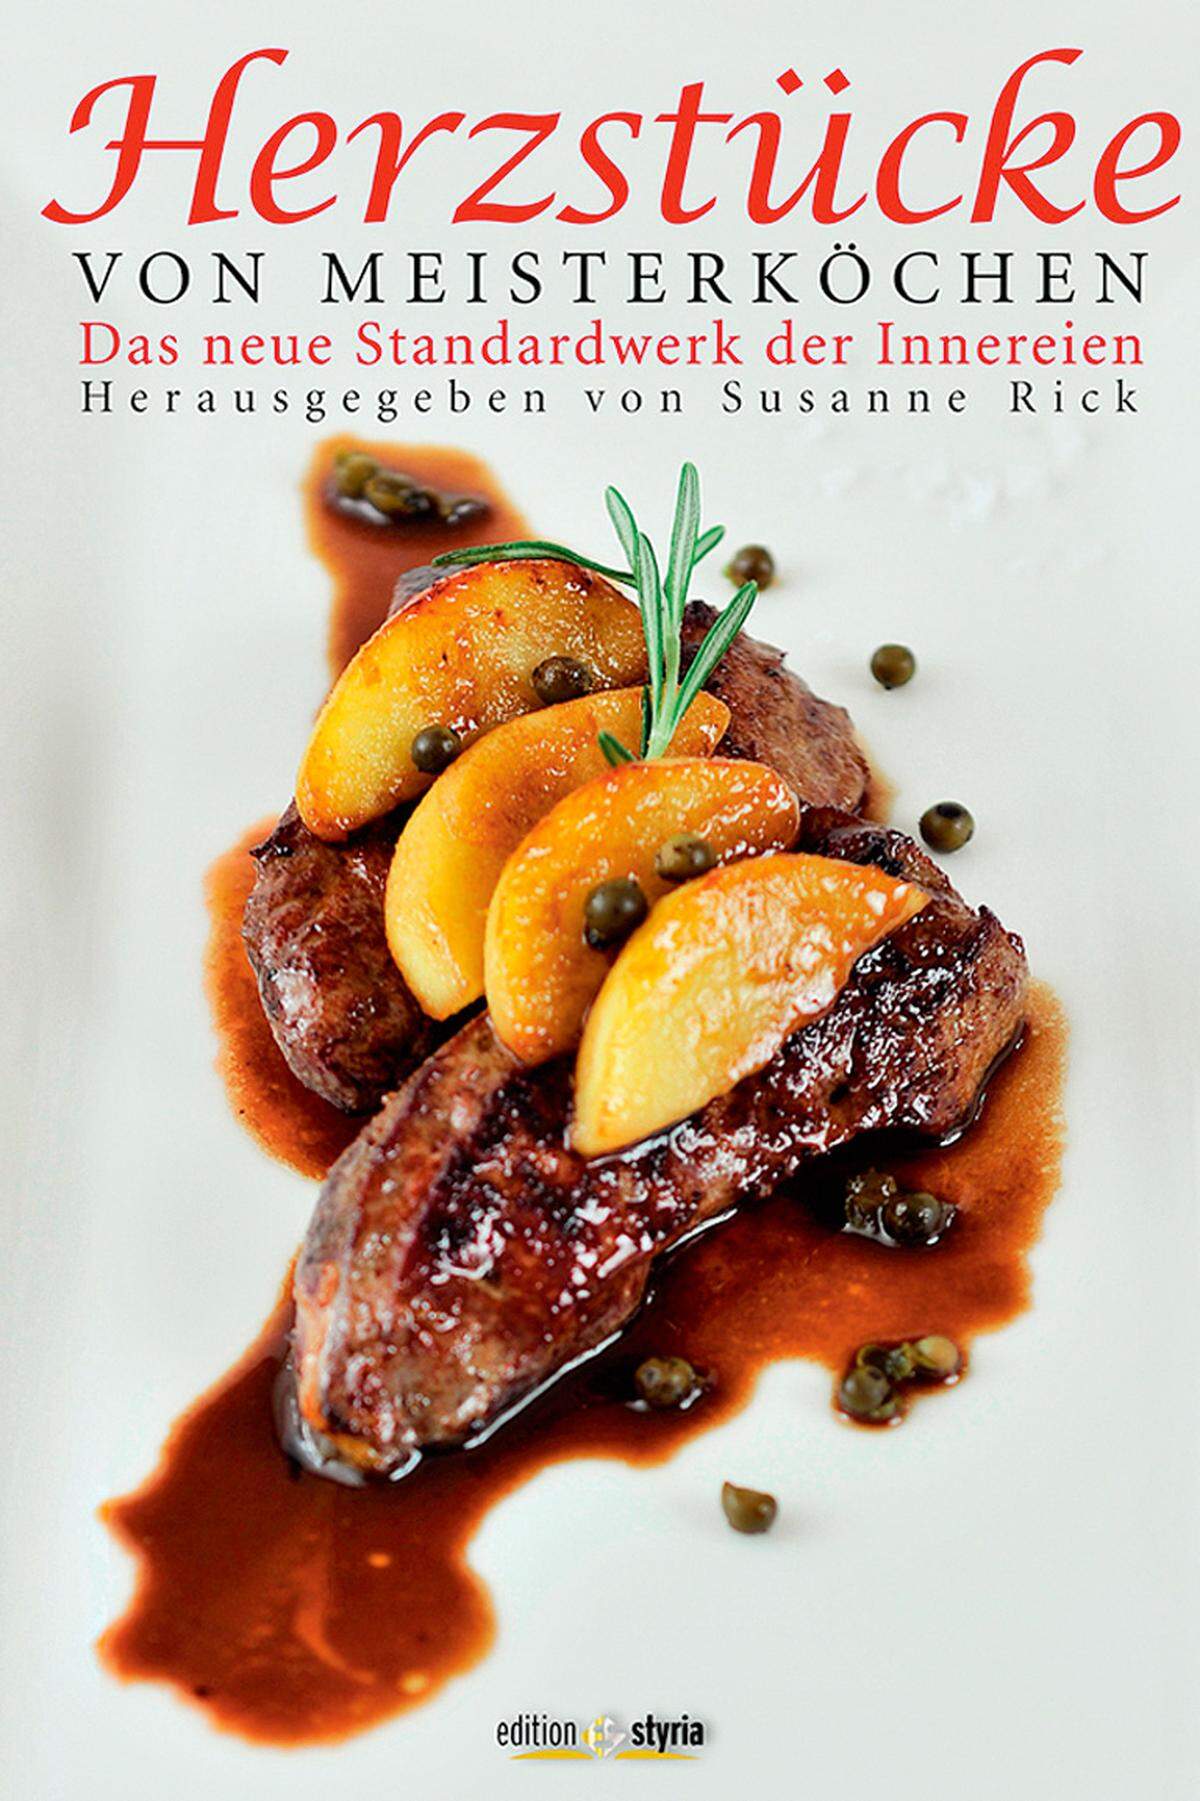 Rezepte verschiedener Köche, etwa von Adi Bittermann. Eher für Fortgeschrittene. „Herzstücke“, Edition Styria, 30 Euro.